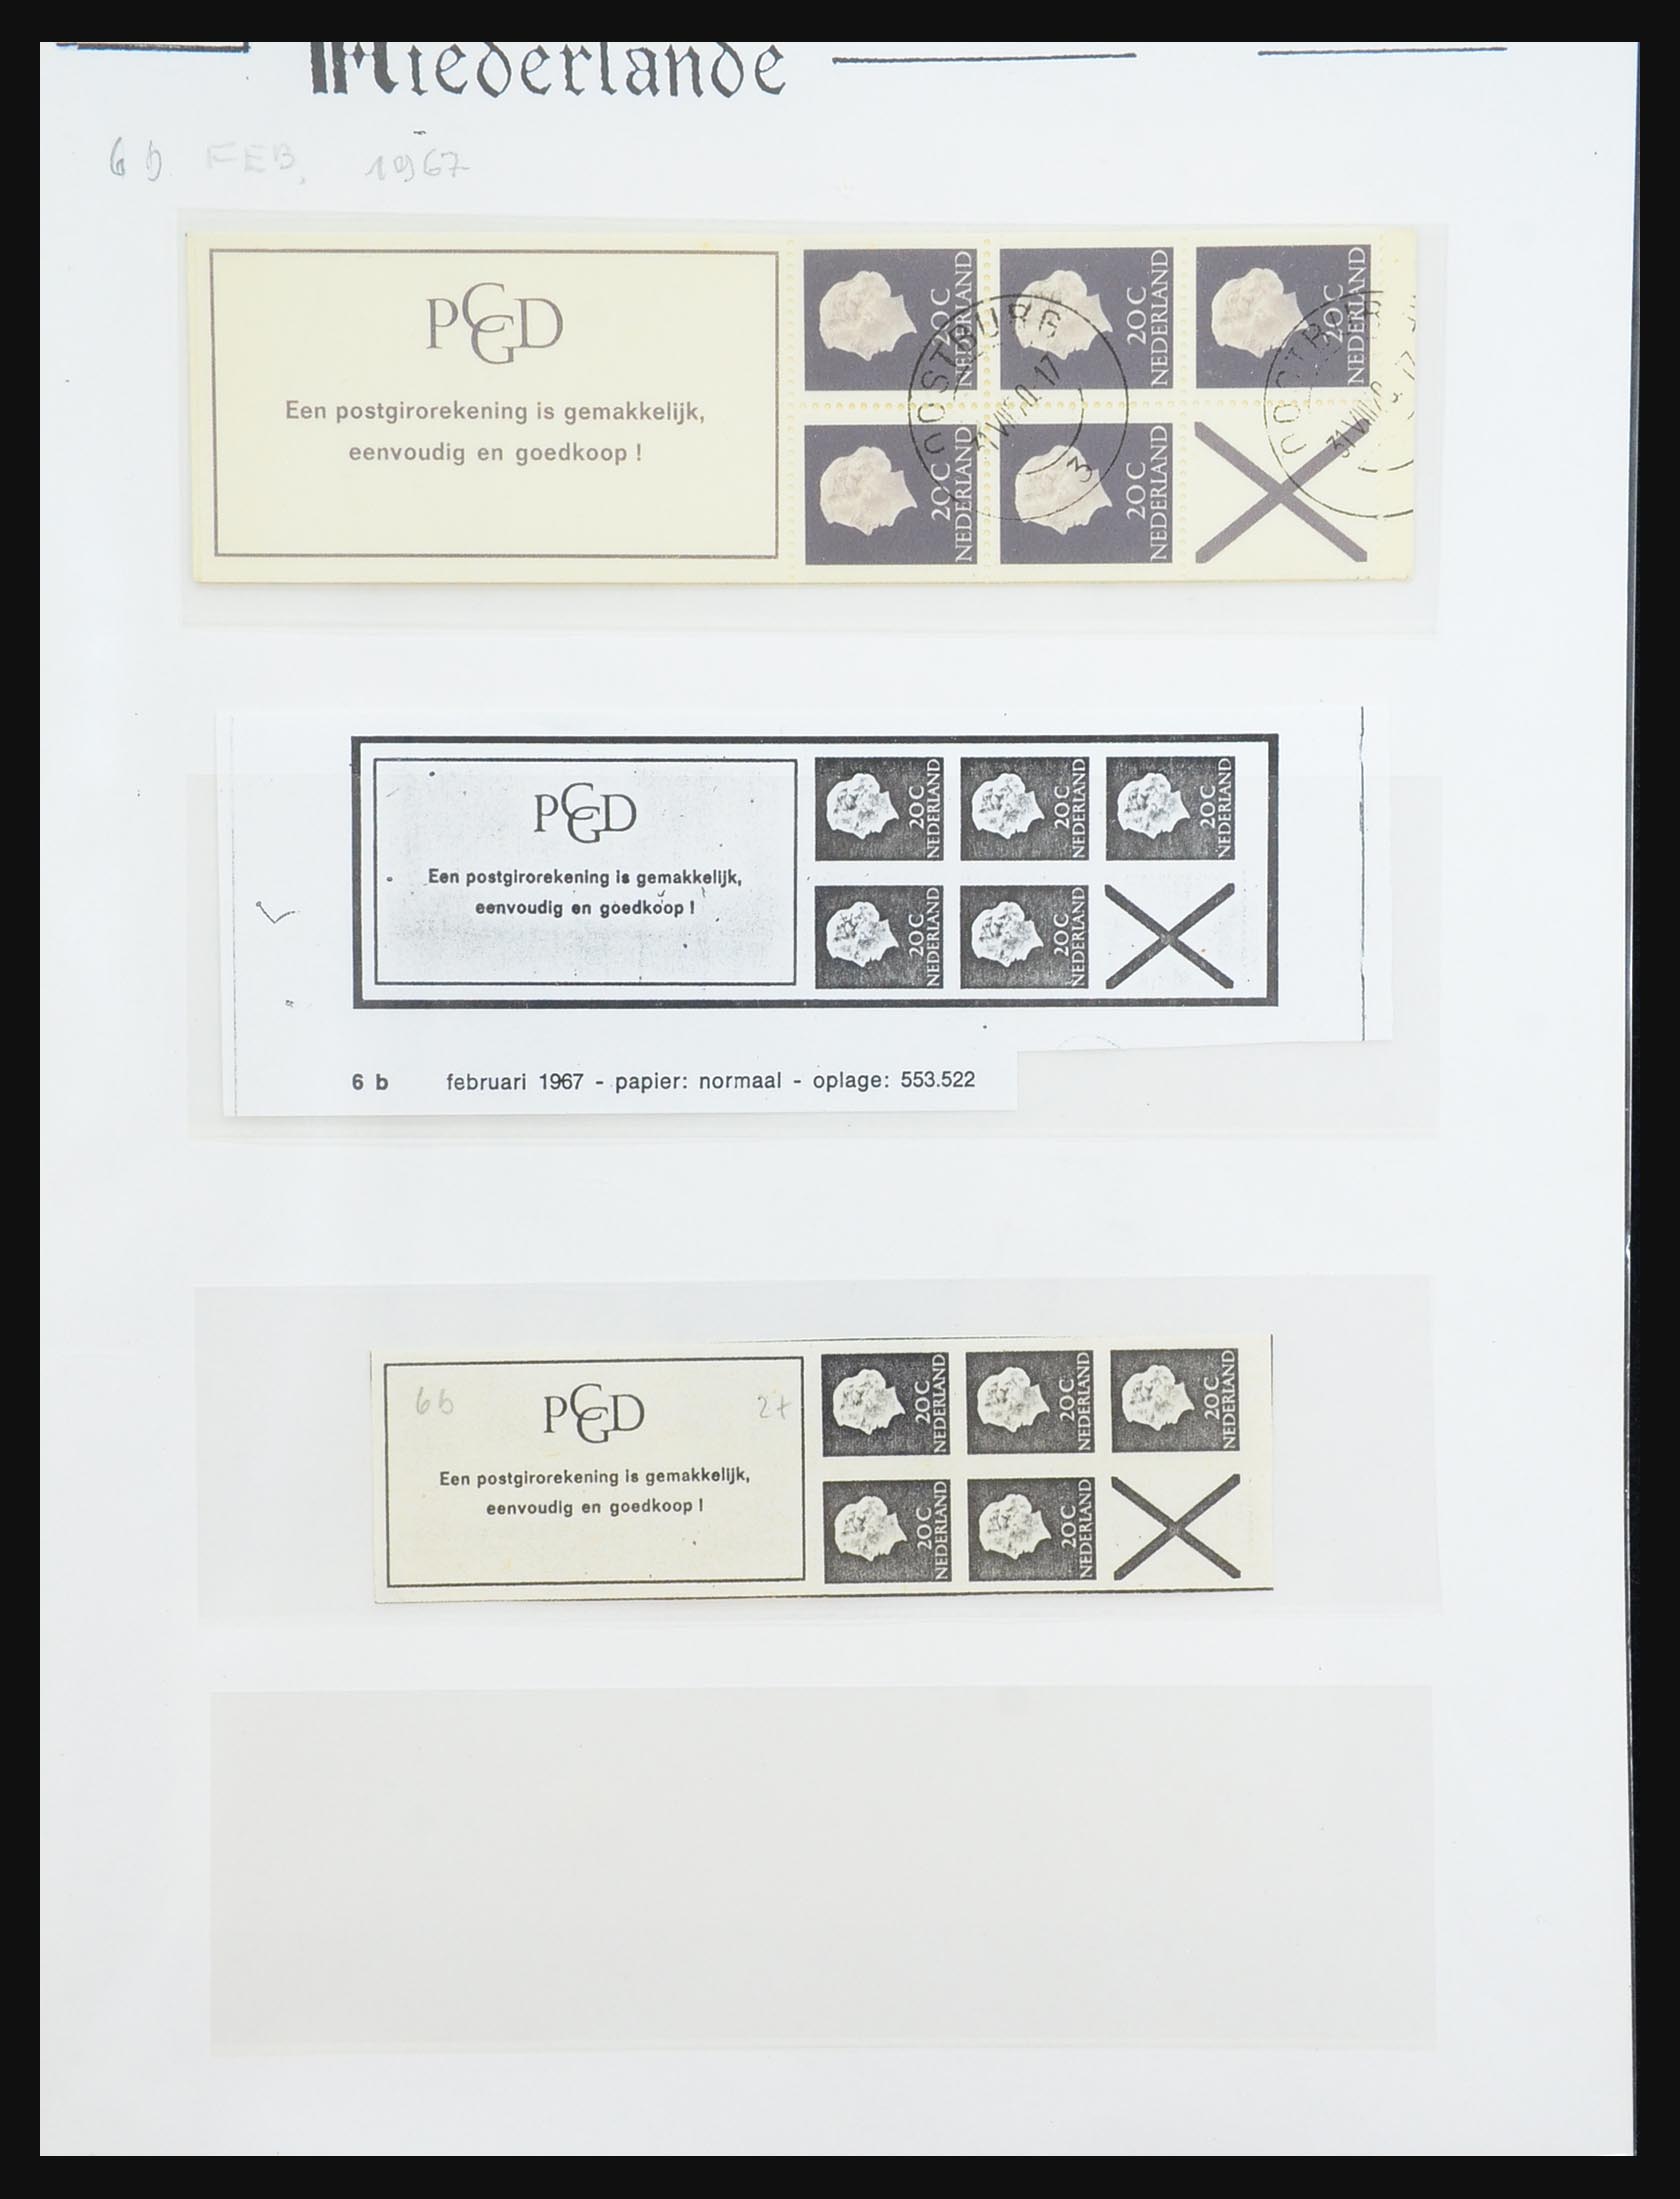 31311 011 - 31311 Netherlands stamp booklets 1964-1994.